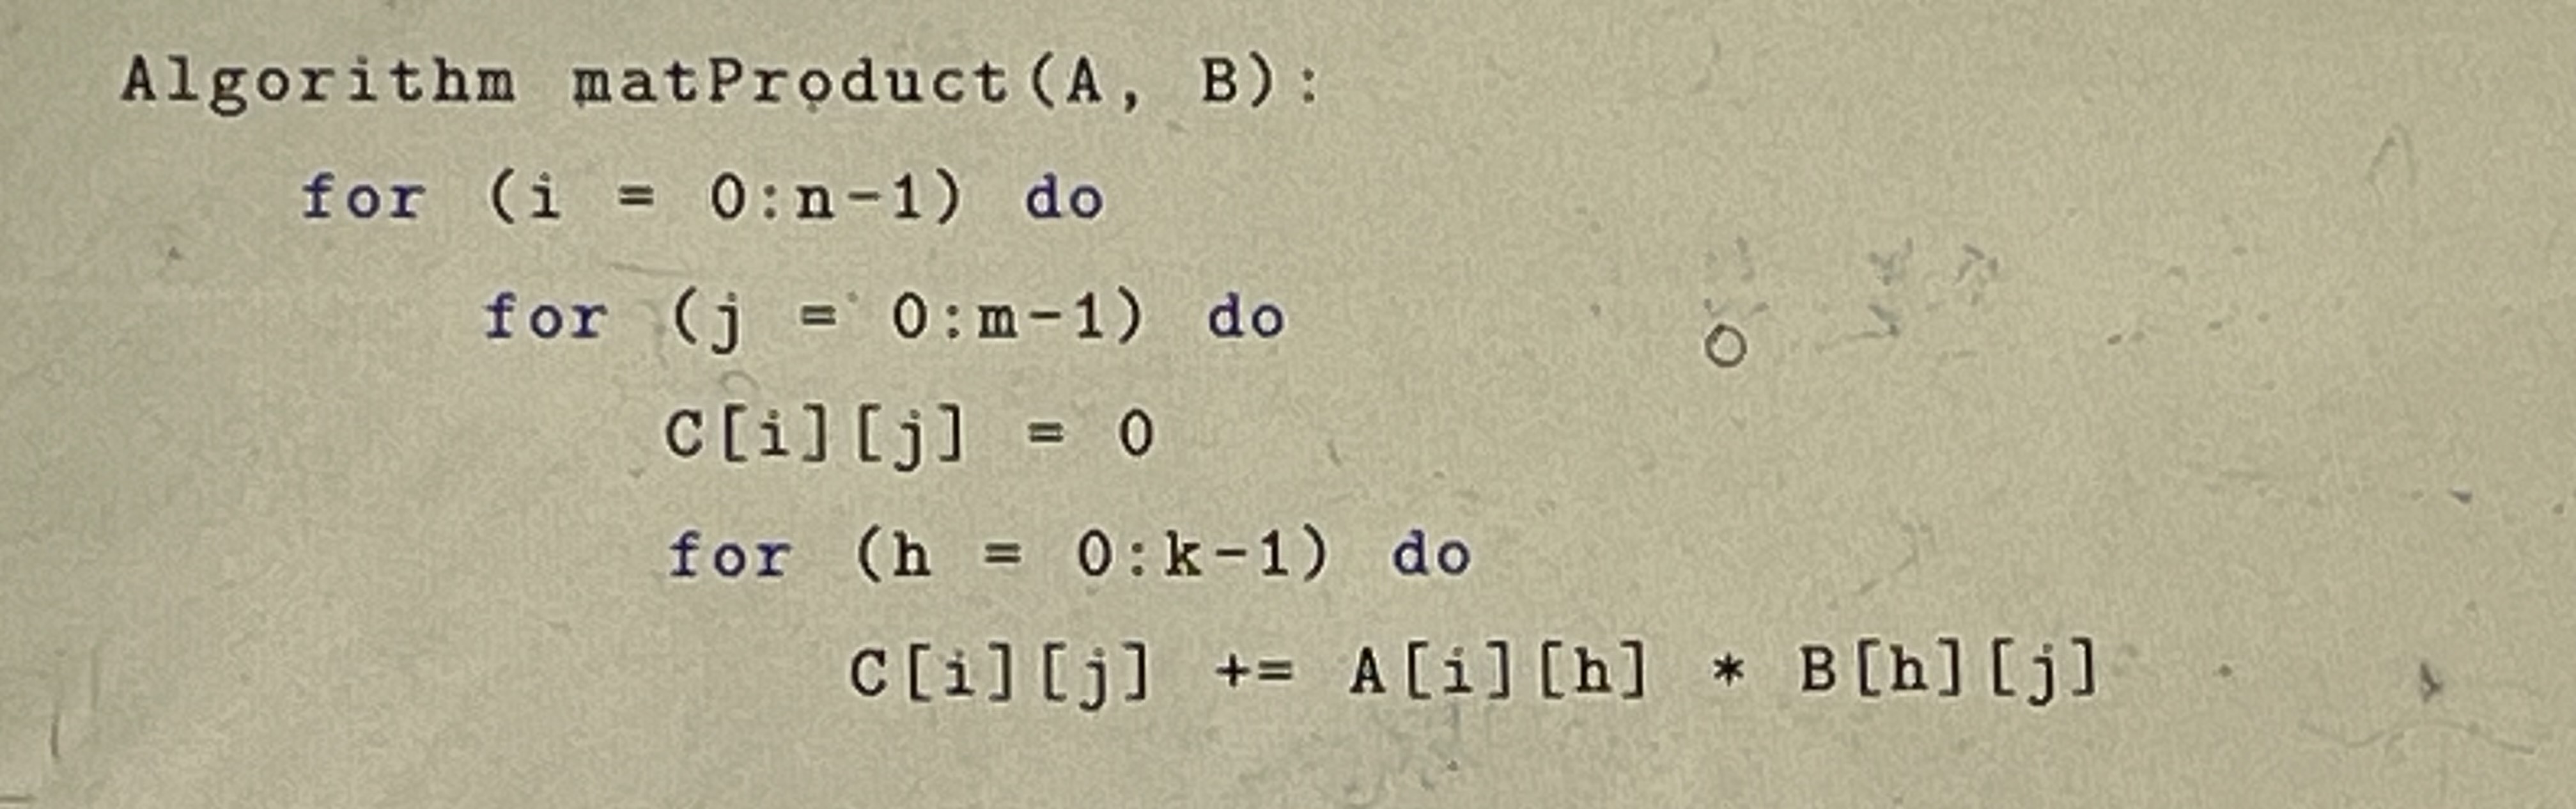 Algorithm mat Product (A, B): for (i = 0: n-1) do for (j = 0:m-1) do c[i][j] = 0 for (h = 0: k-1) do C[i] [j]